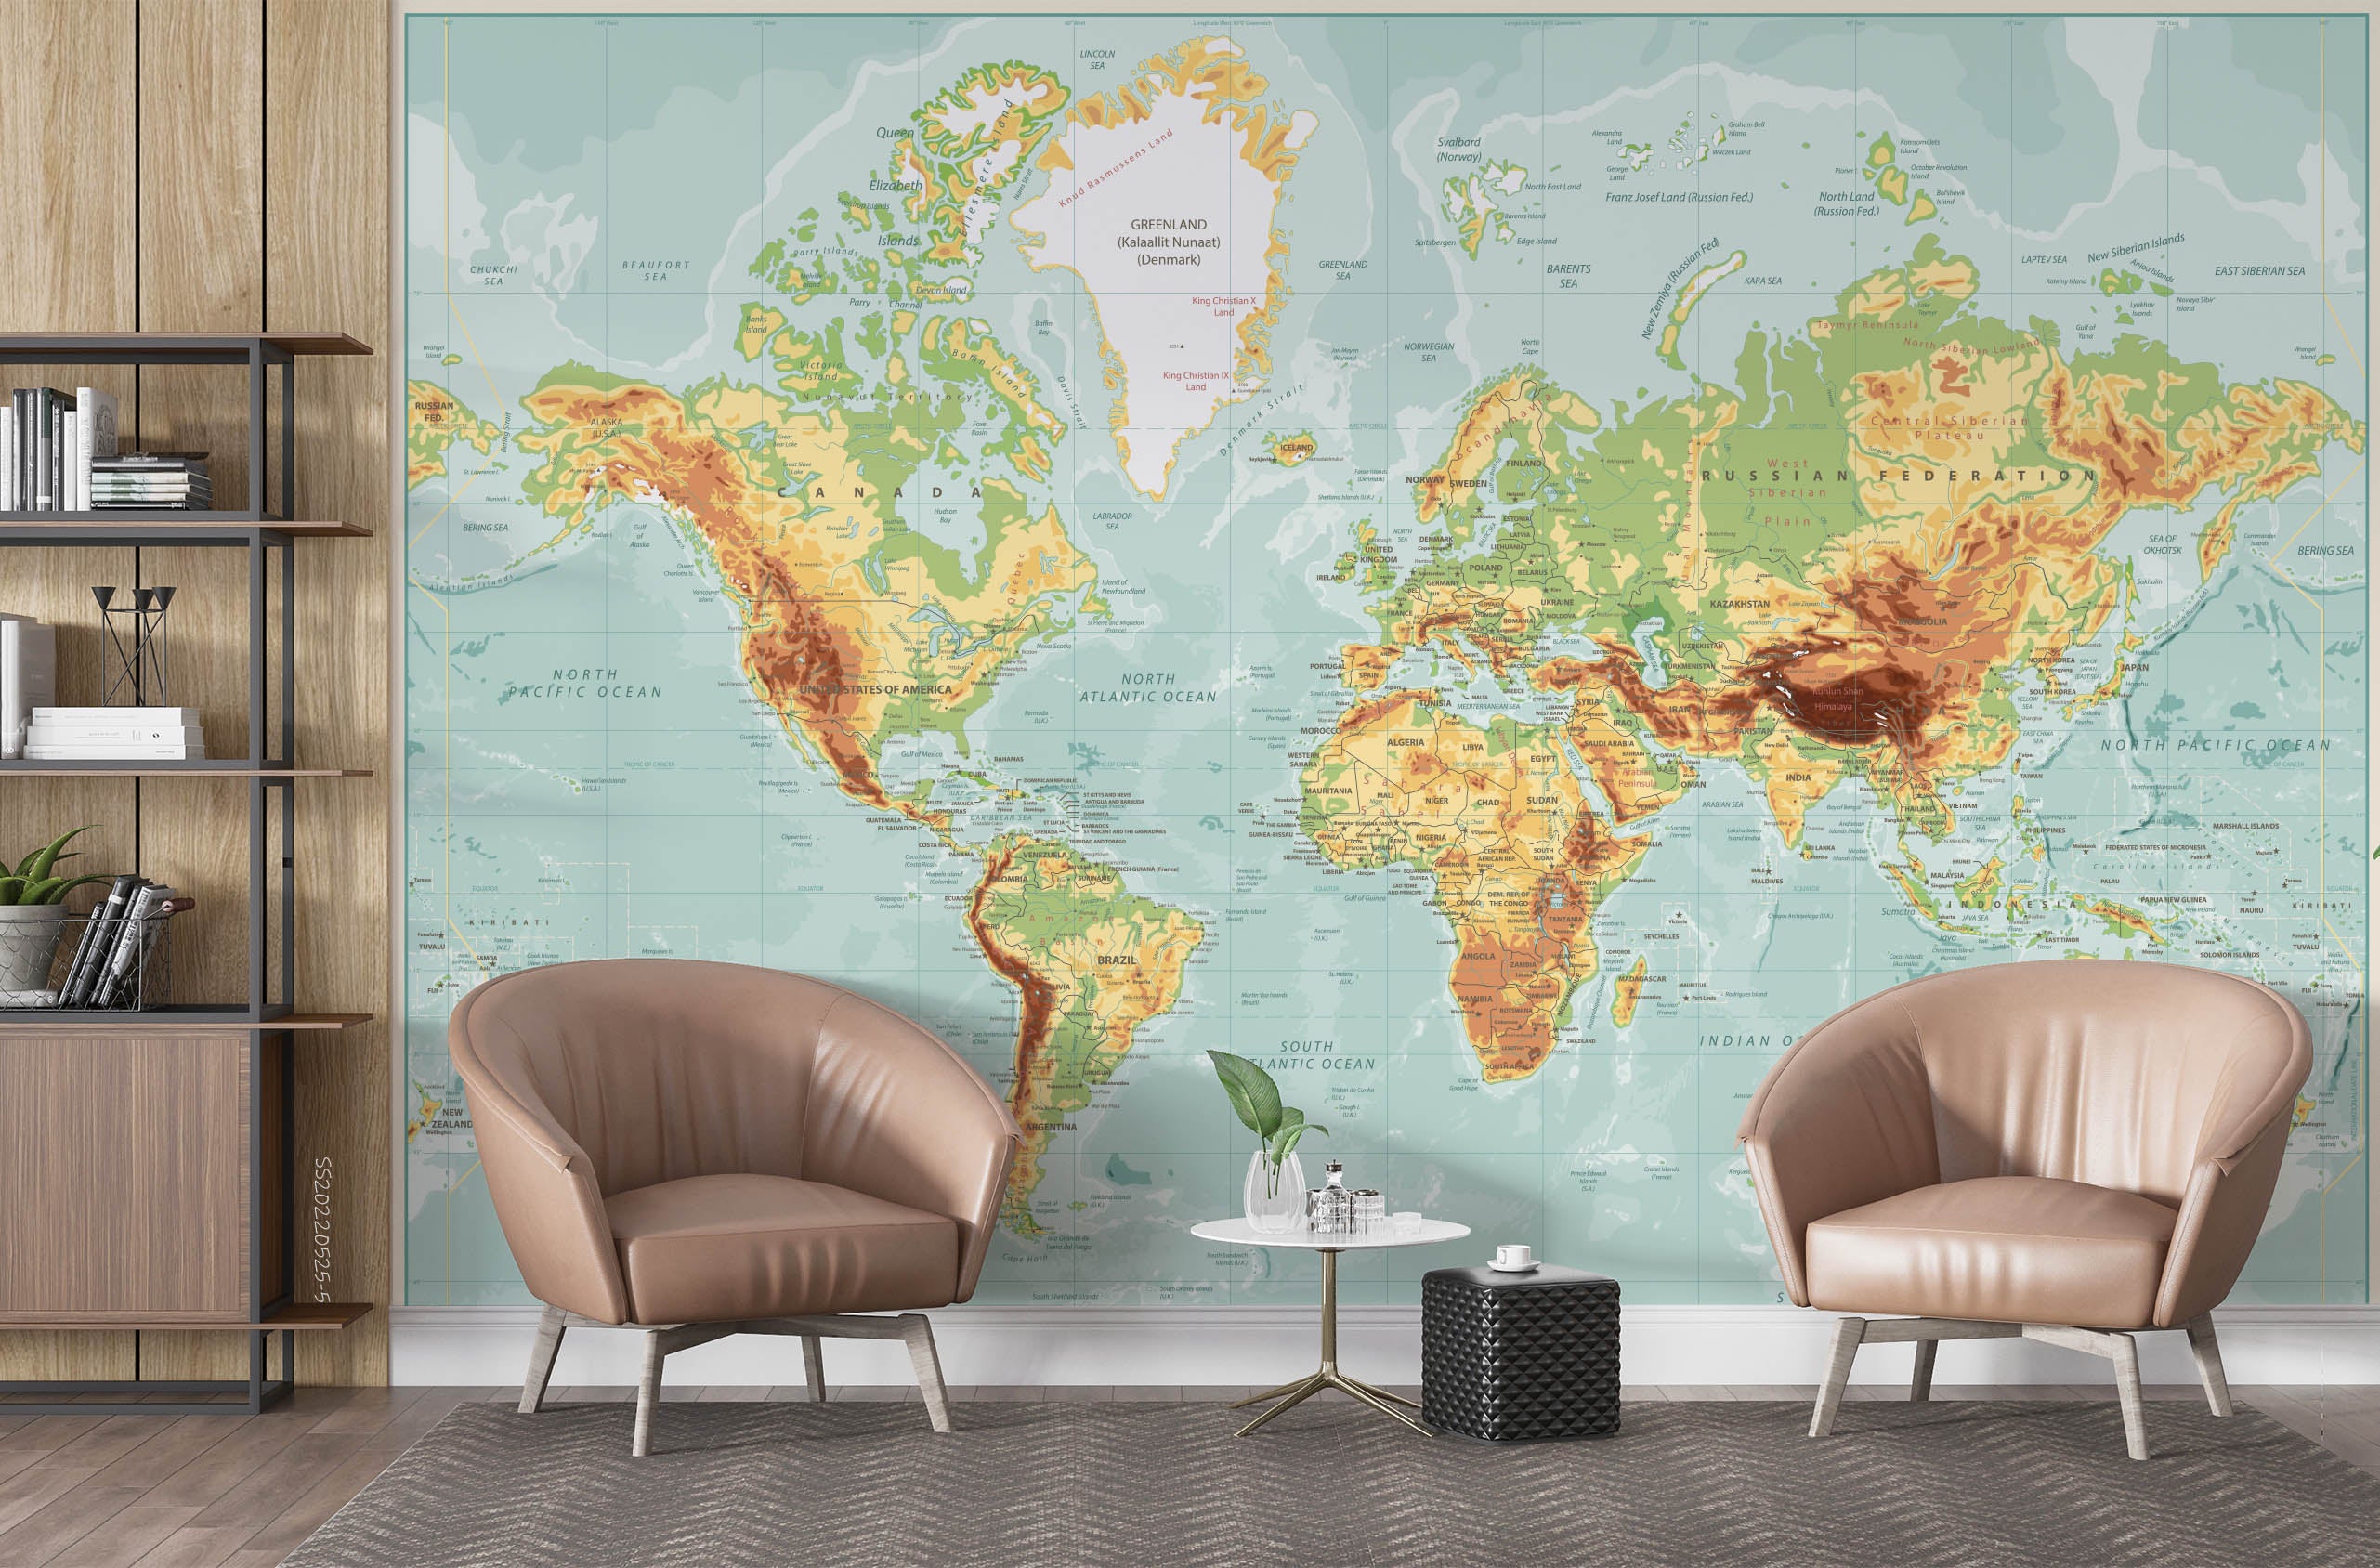 3D Detailed World Map Wall Mural Wallpaper GD 976- Jess Art Decoration